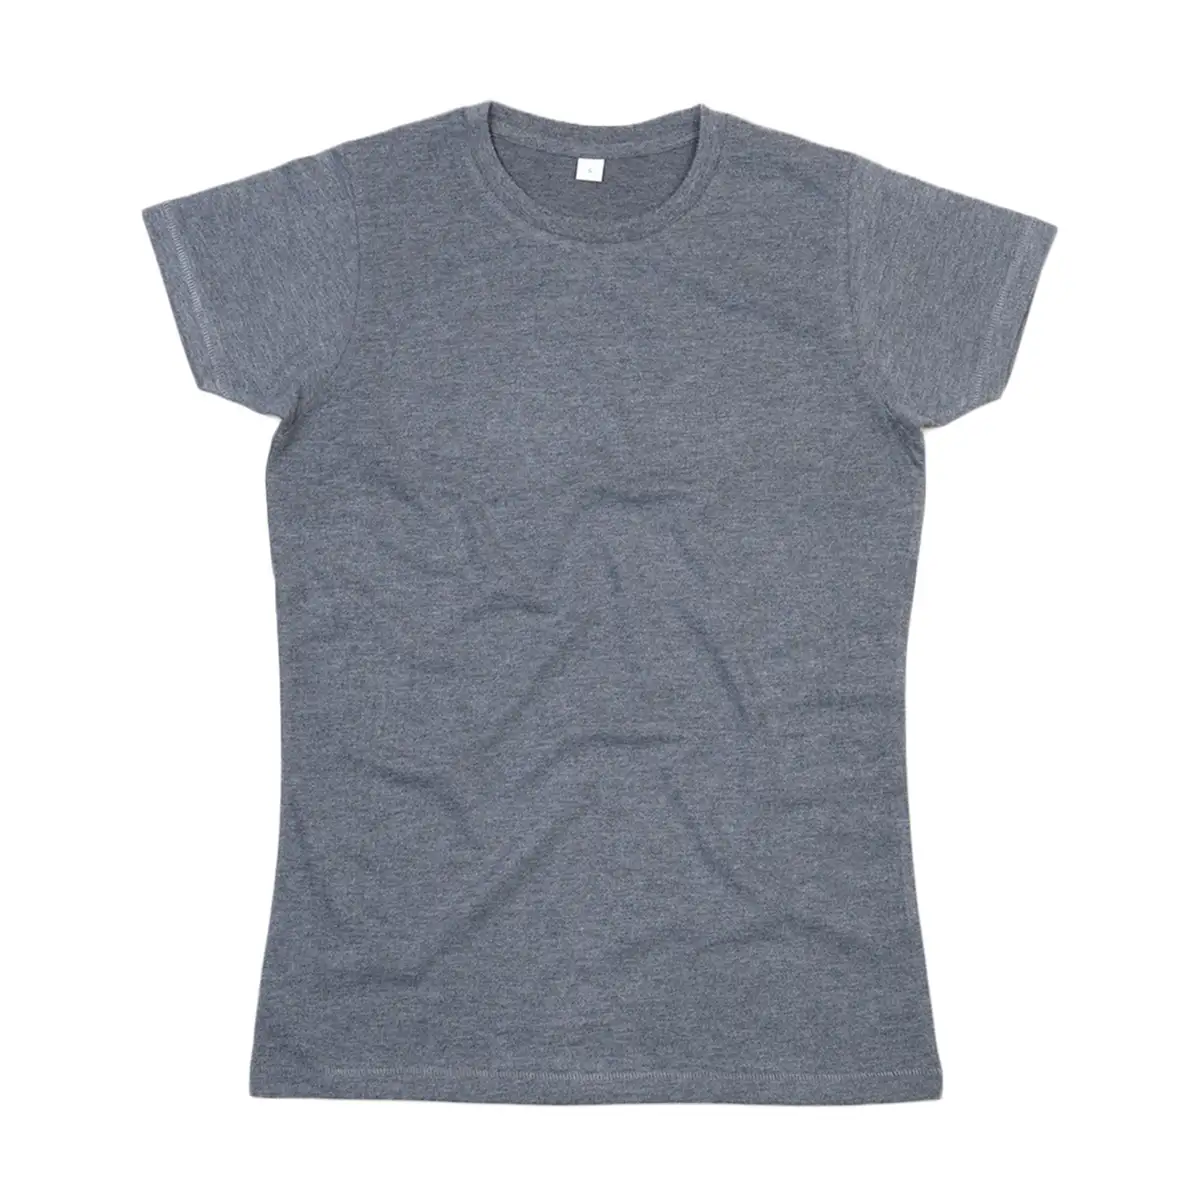 T-Shirt Donna Manica Corta Cotone Personalizzata - Mantis